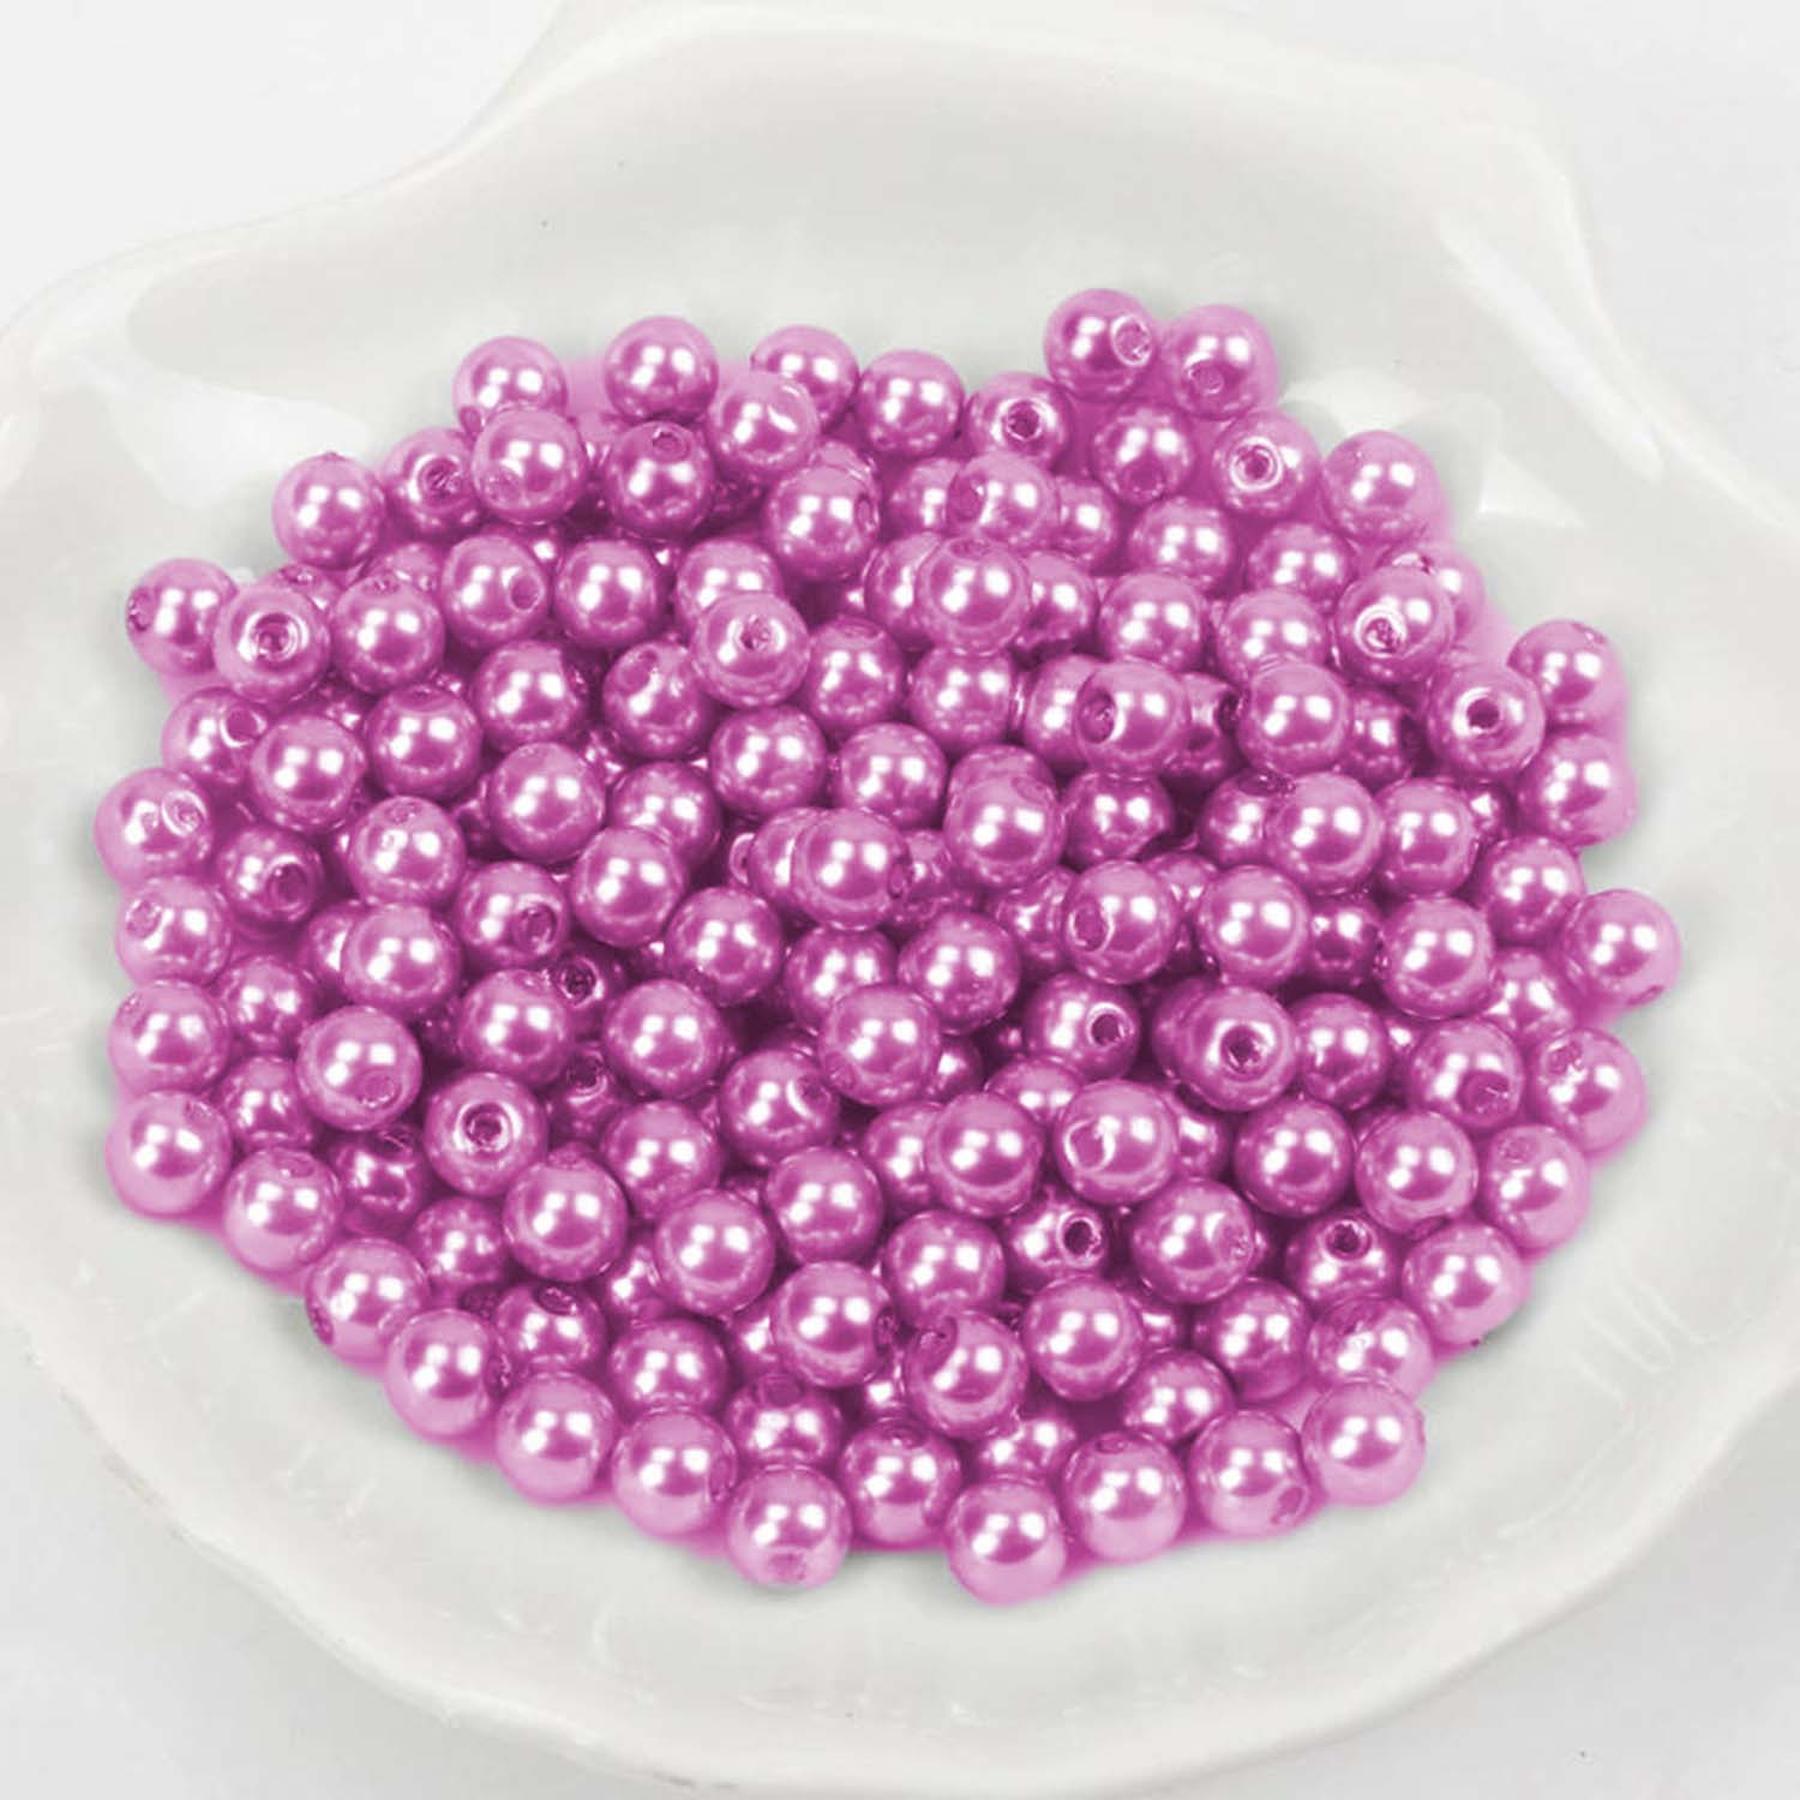 Wachsperlen - 600 Stück - 2mm - Pink